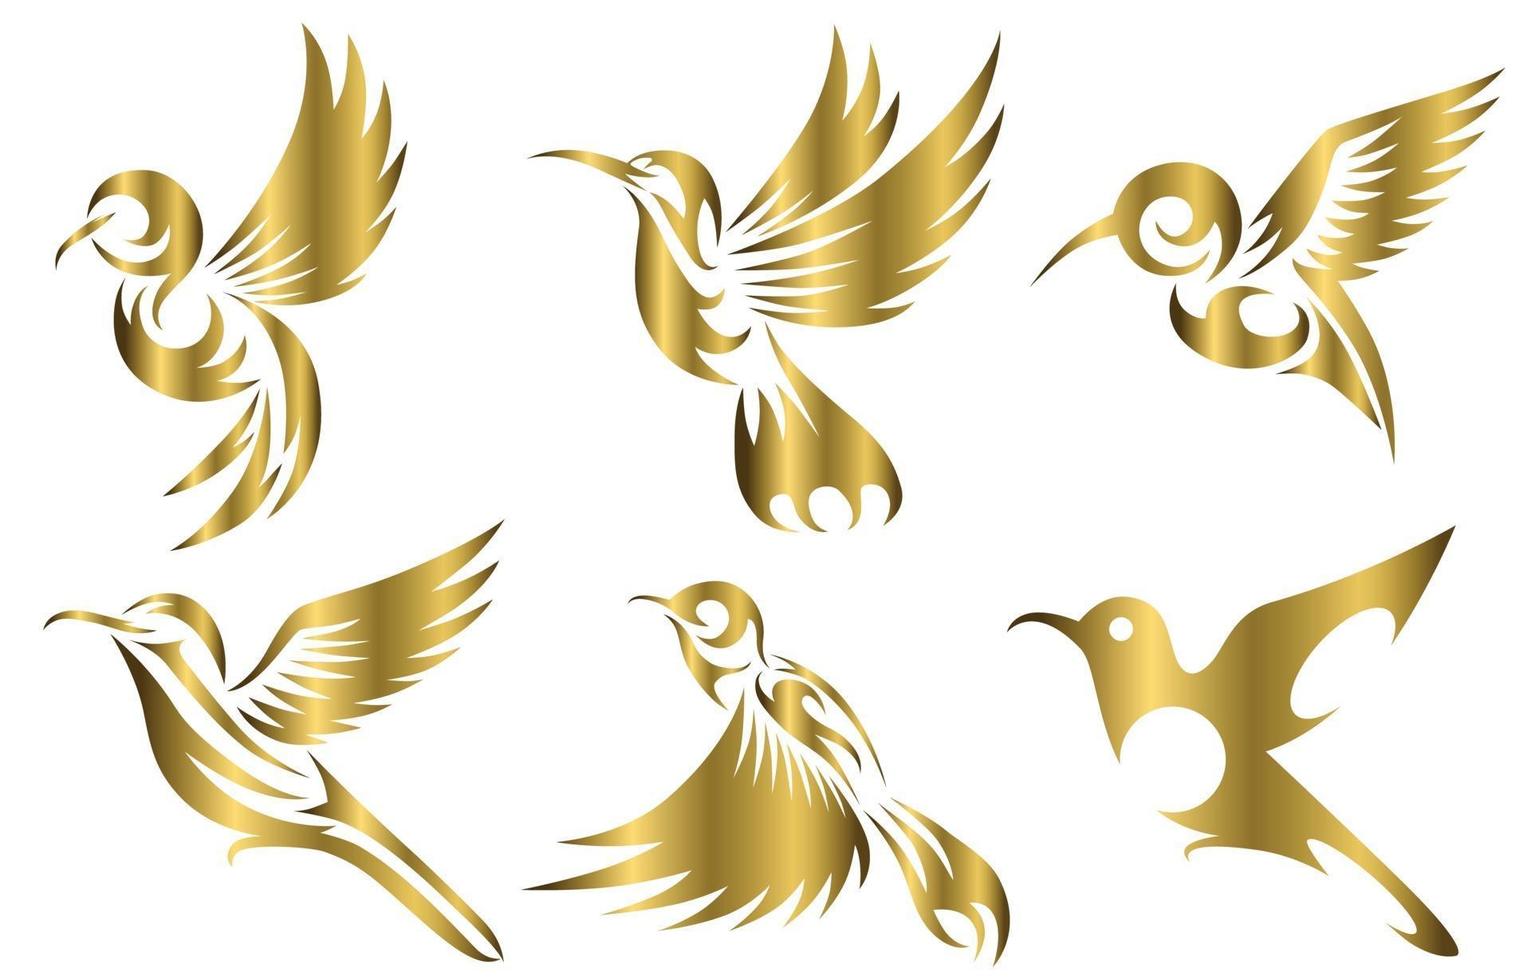 line art oro illustrazione vettoriale sei set di immagini di colibrì volanti adatti per la creazione di loghi